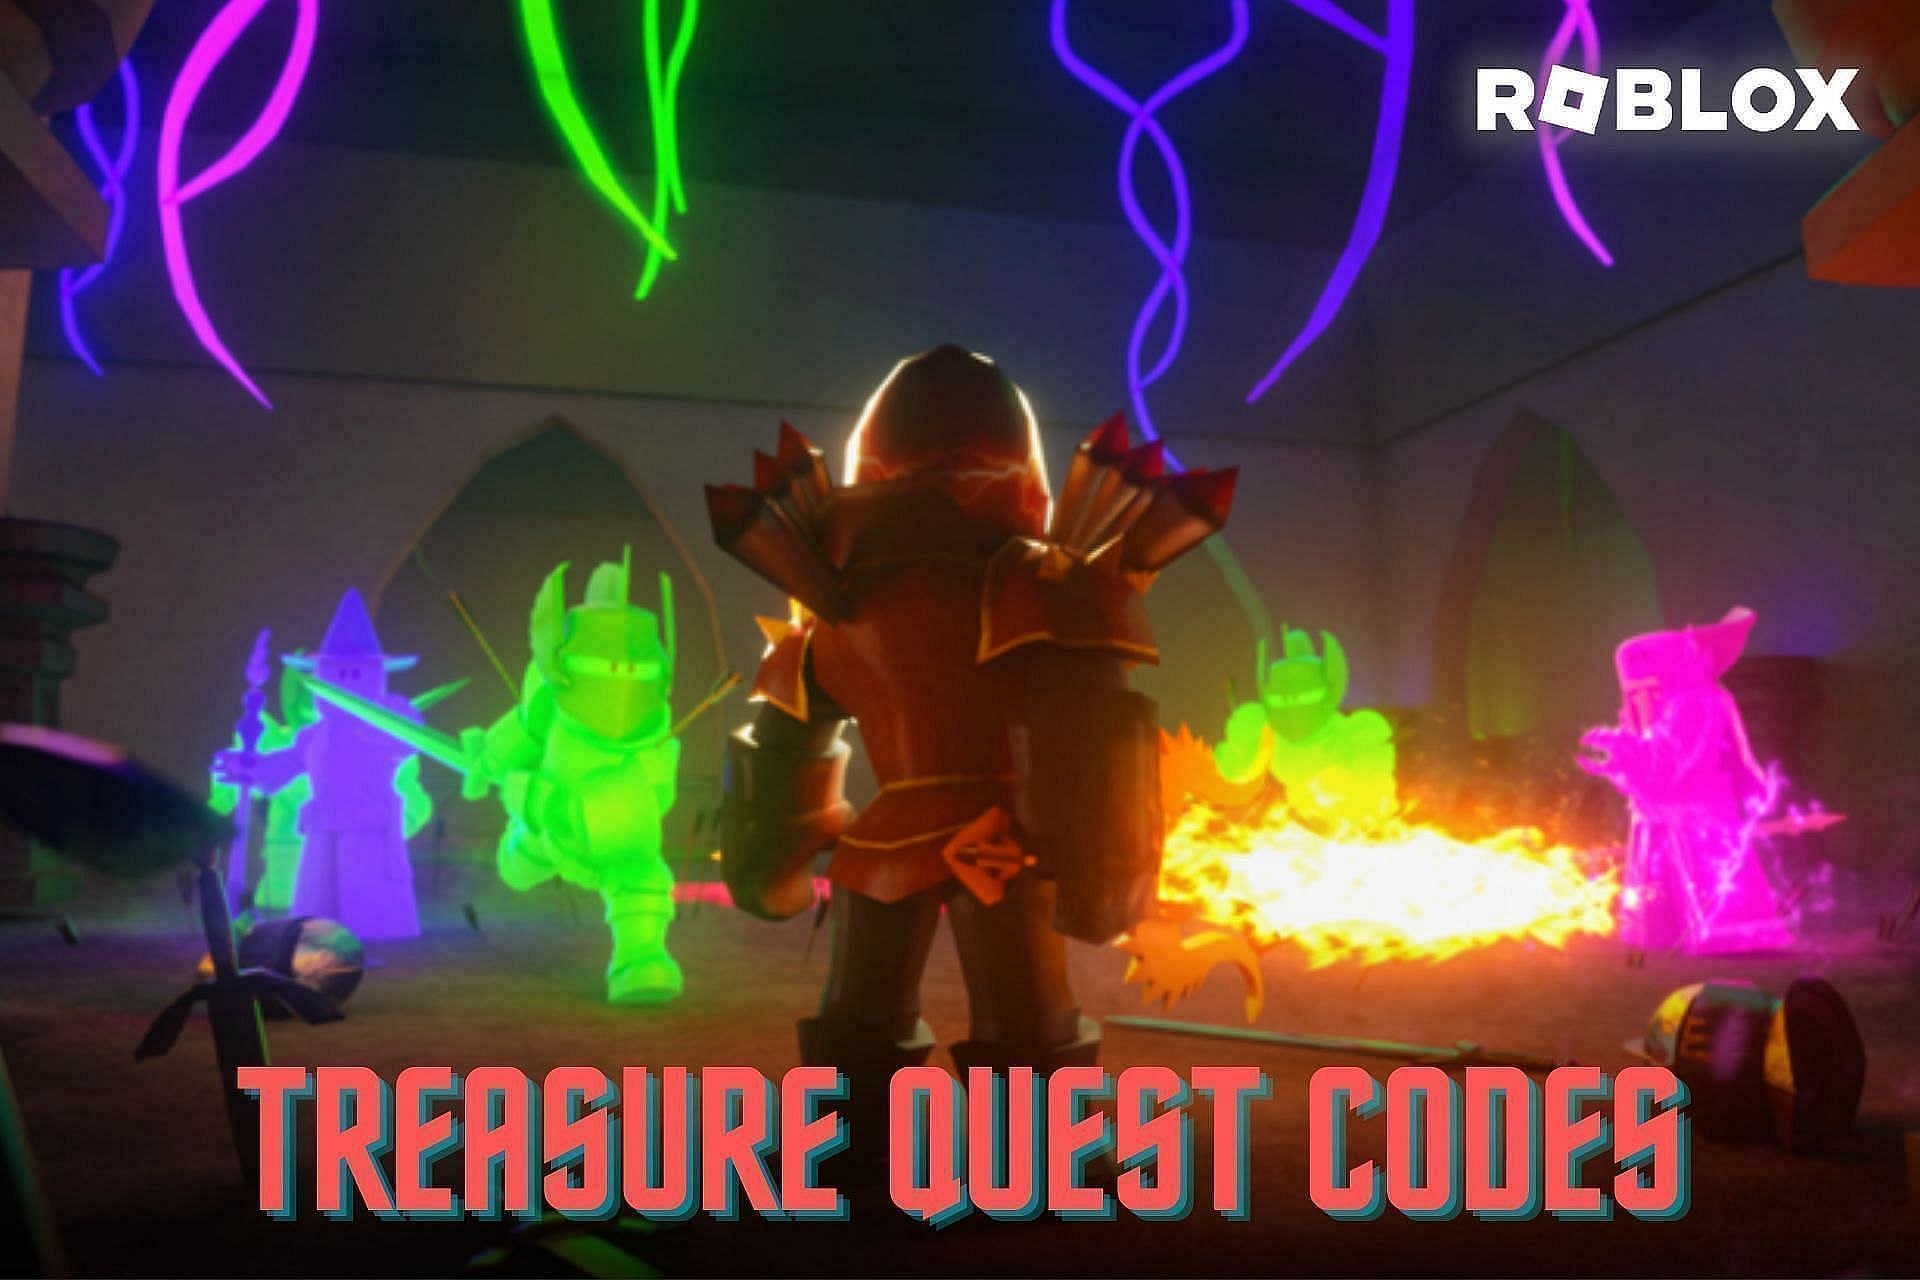 Treasure Quest codes (Image via Sportskeeda)